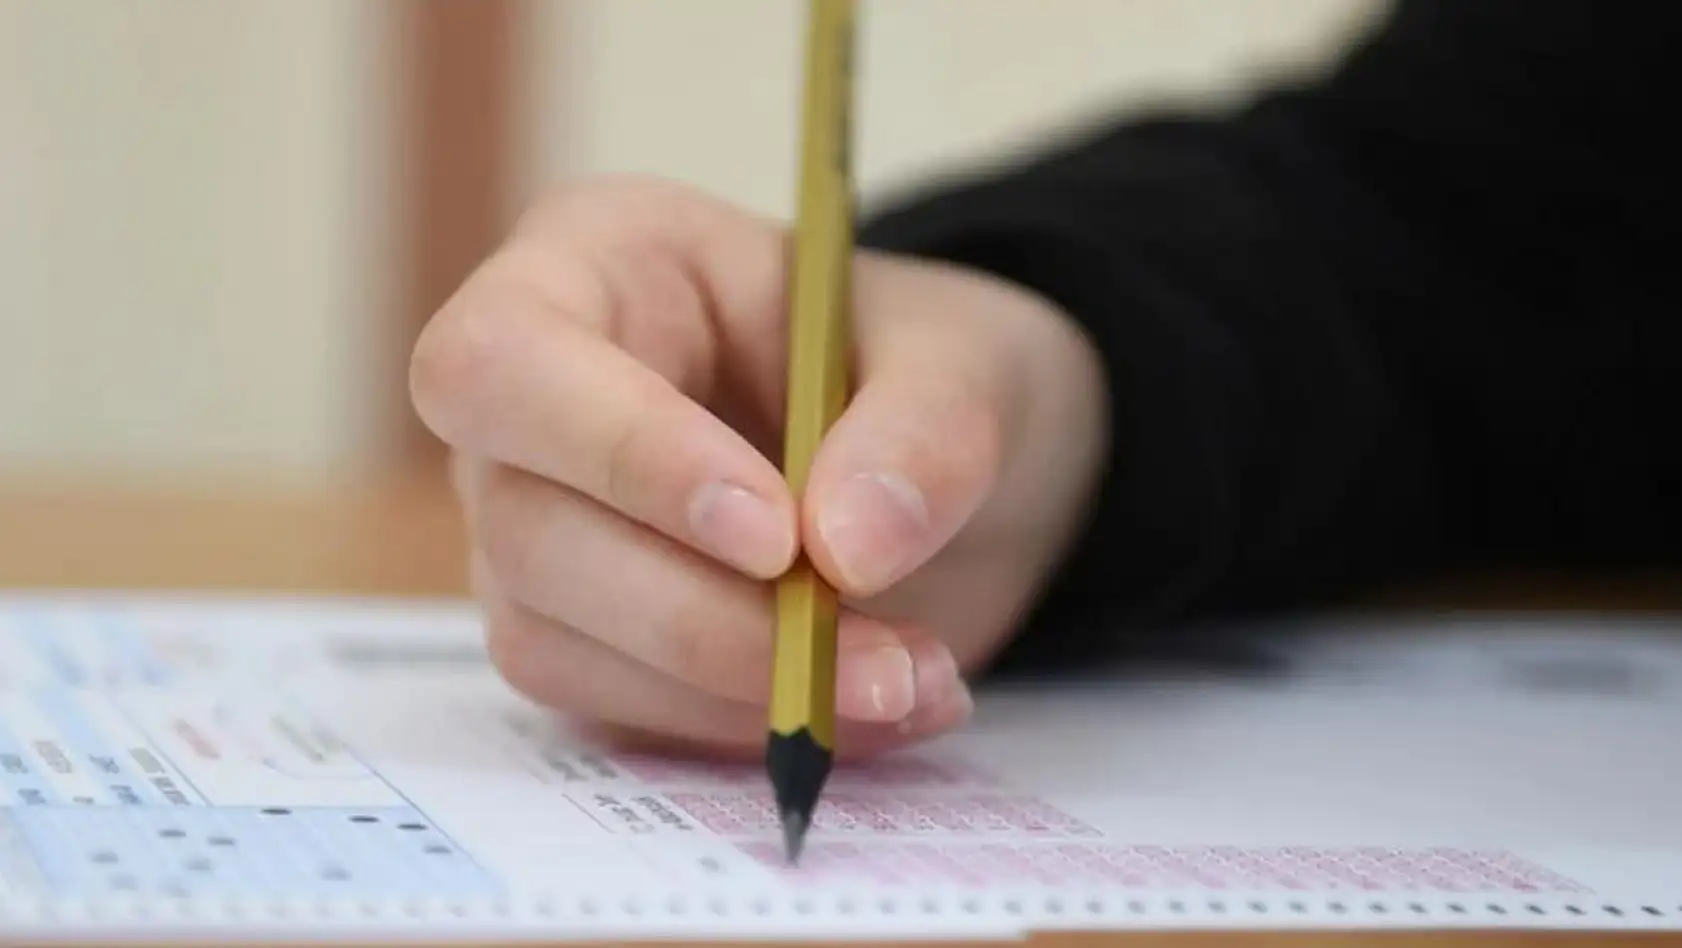 MEB Ortaokul ve Liselerde İlk Kez Yapılacak 'Ortak Sınav' Tarihlerini Açıkladı